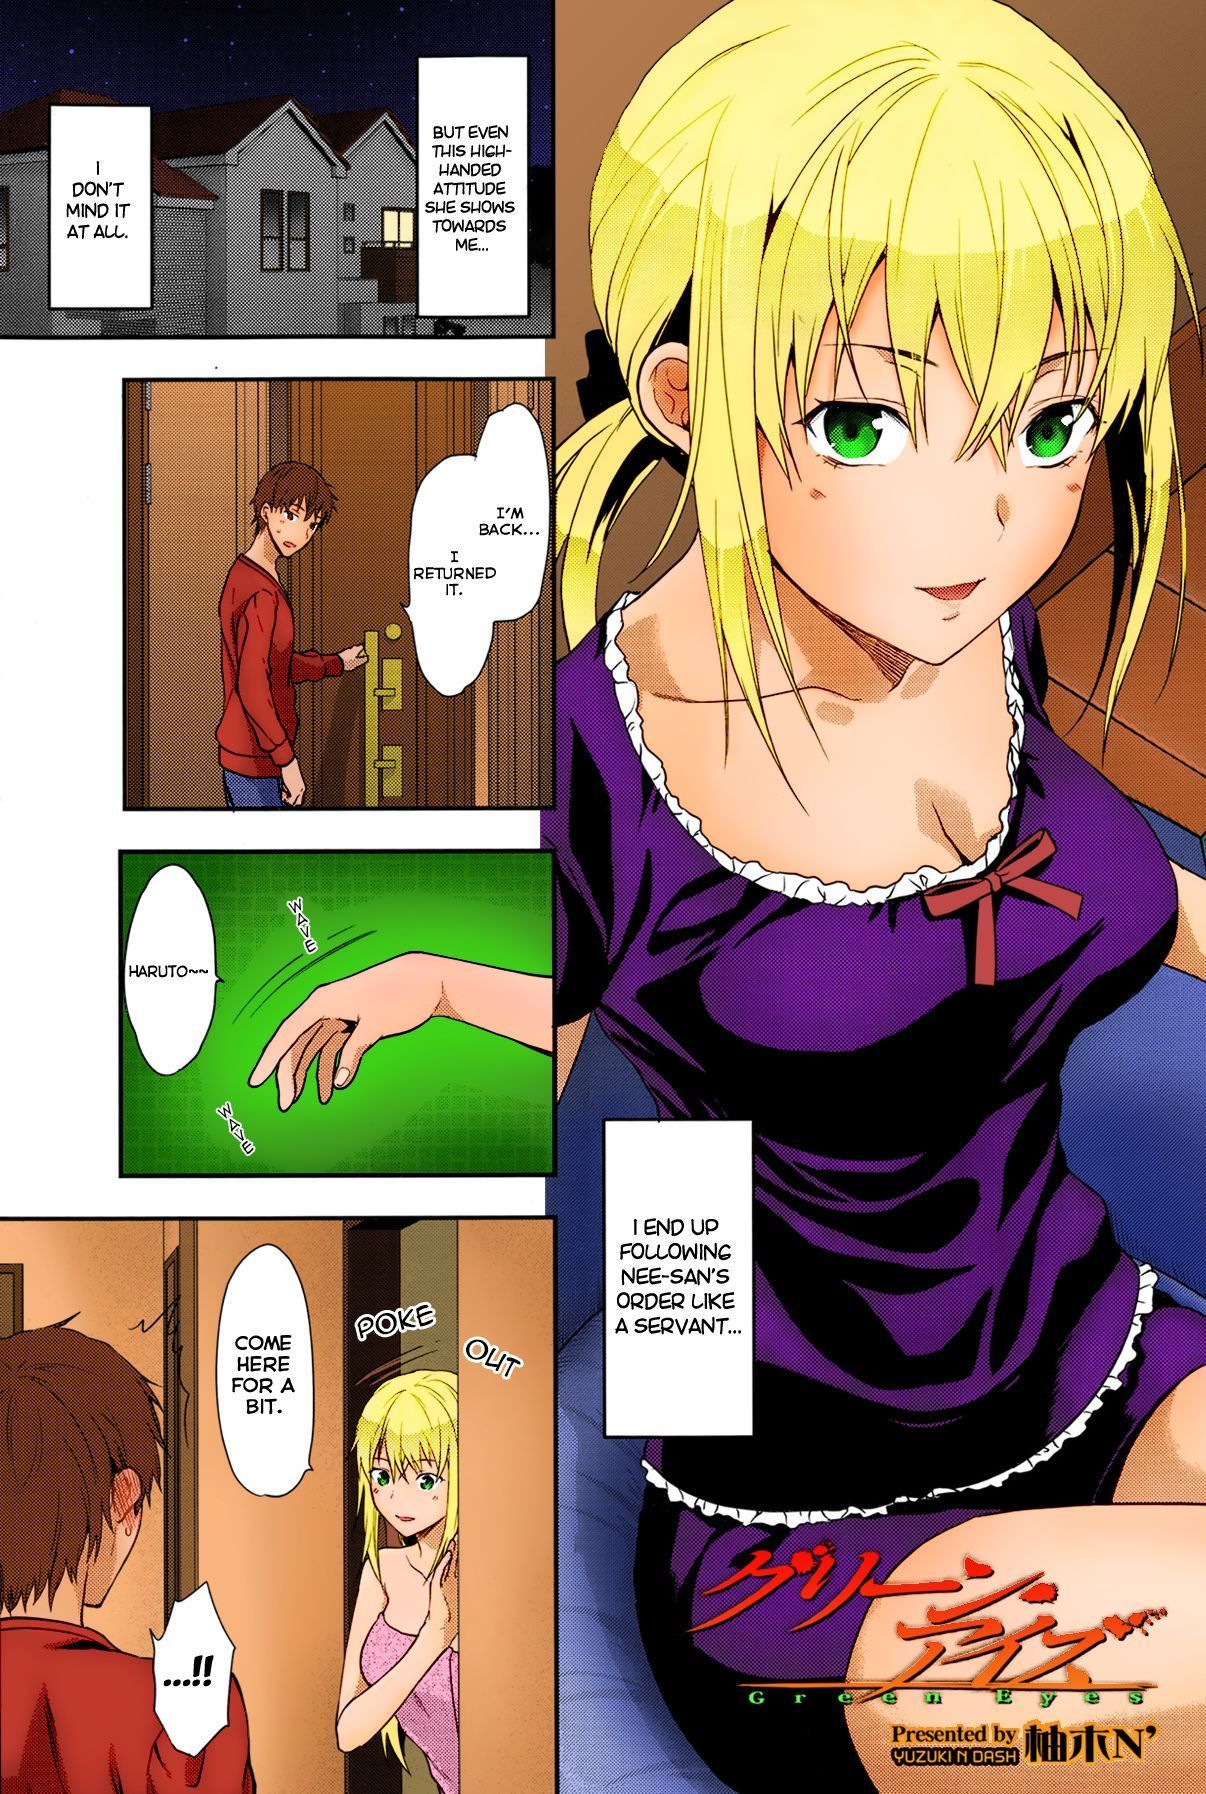 Yuzuki N Dash Verde los ojos (comic tenma 2013 06) decensored coloreada en el progreso